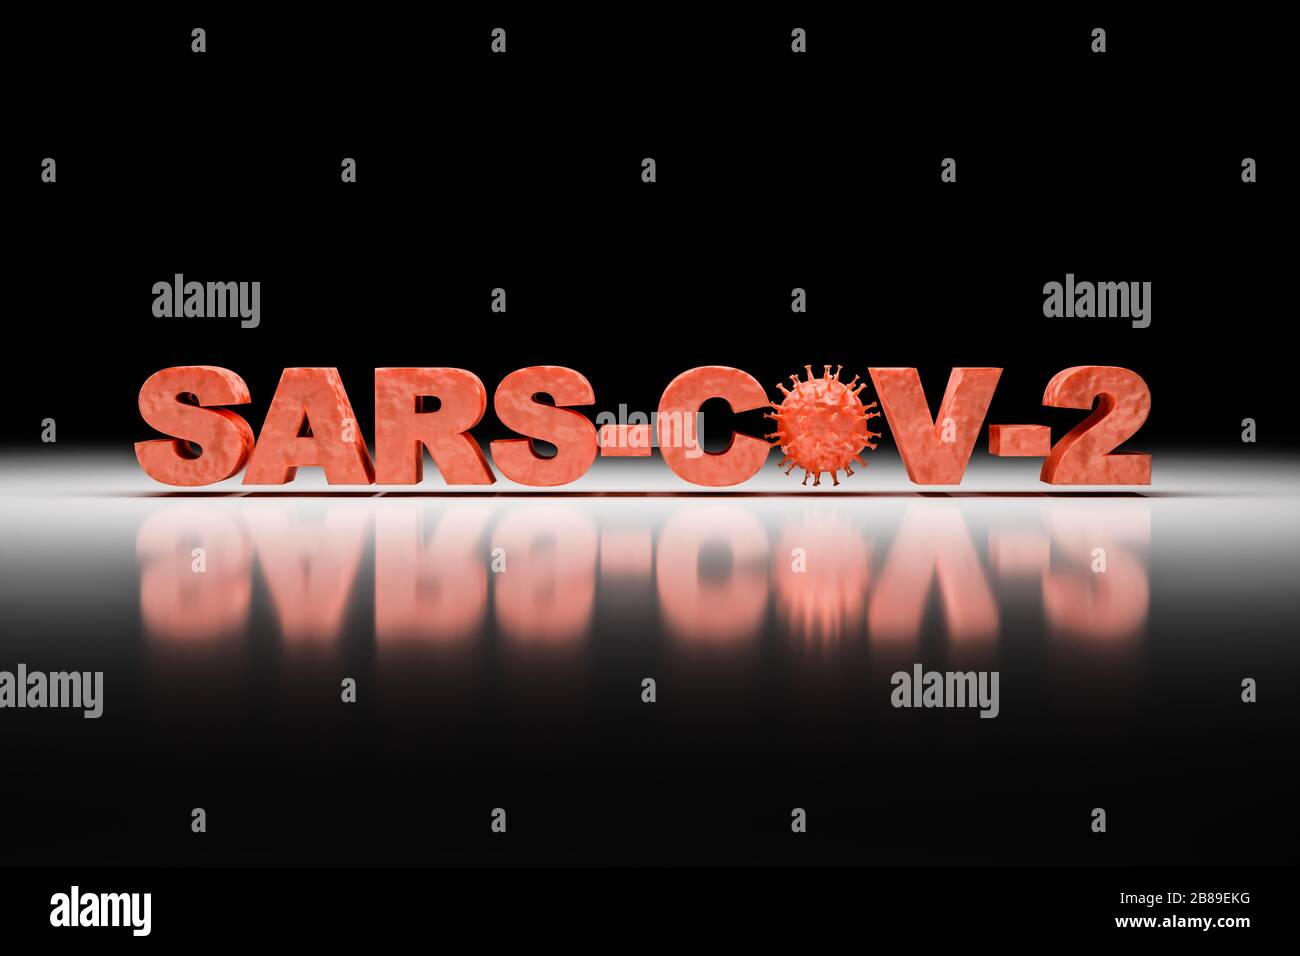 Presentación 3D: Virus Corona - imagen esquemática de los virus de la familia Corona incrustada en el texto 'SARS-COV-2'. Foto de stock